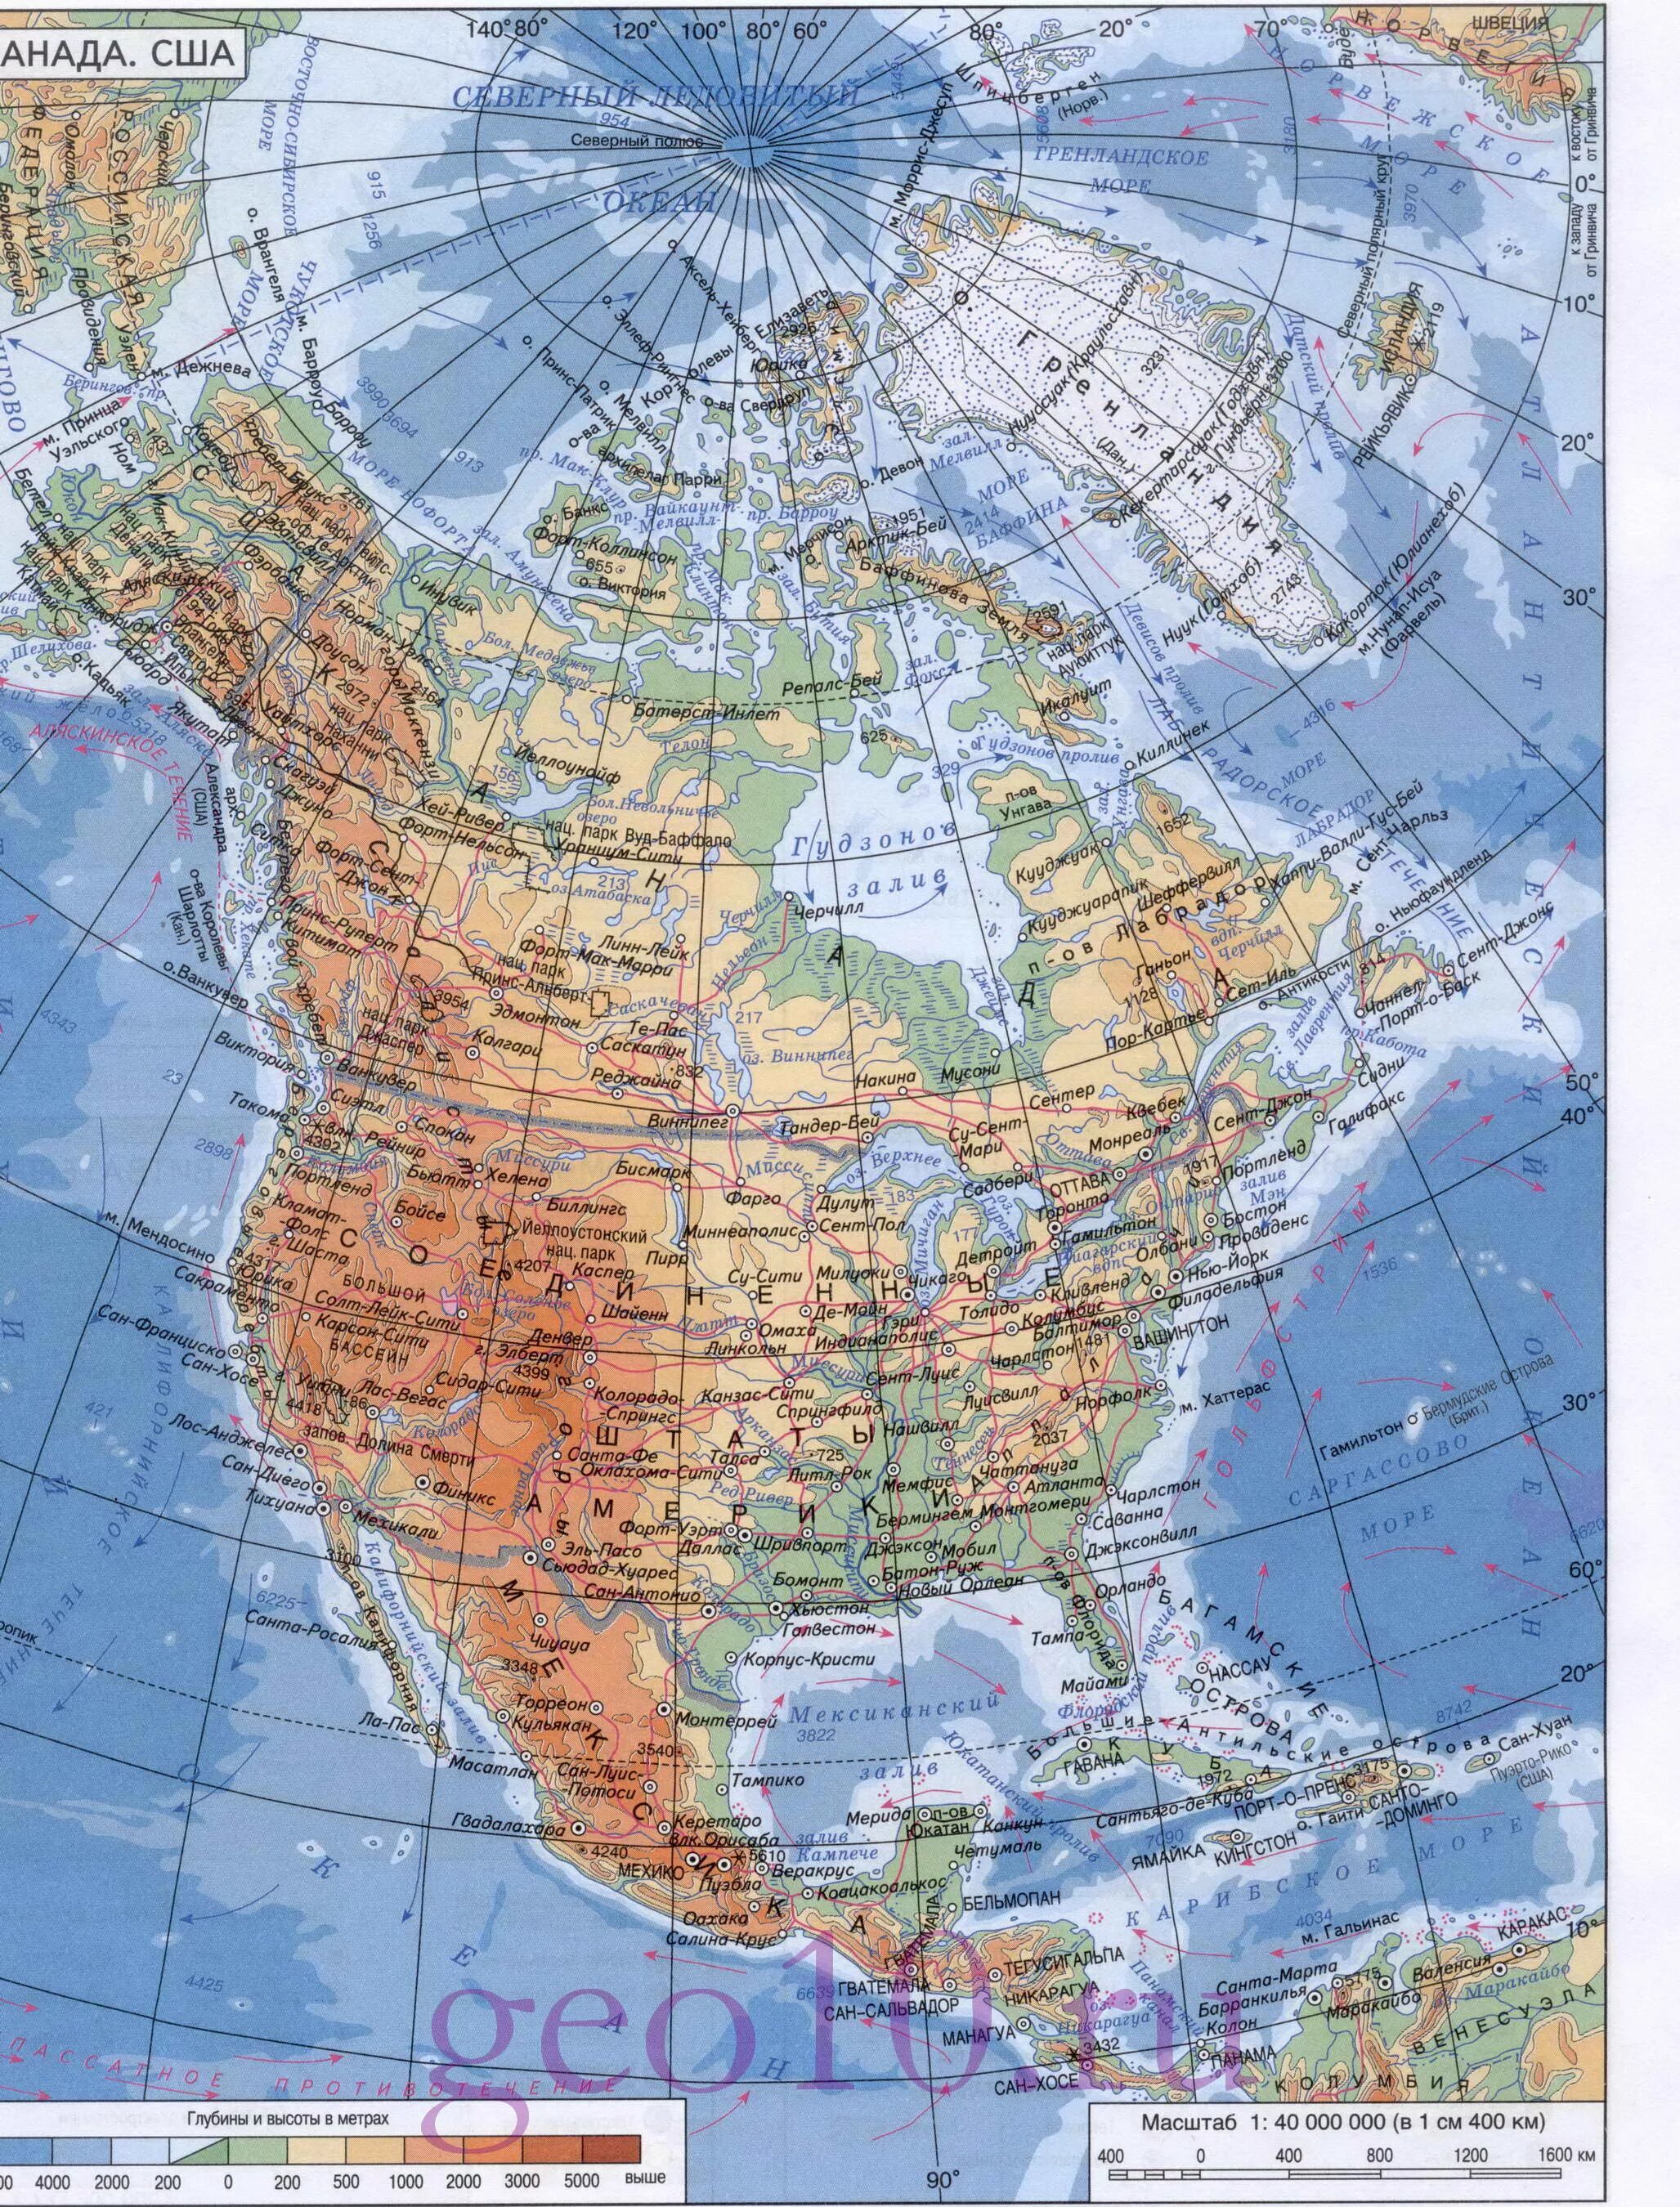 Используя физическую карту северной америки